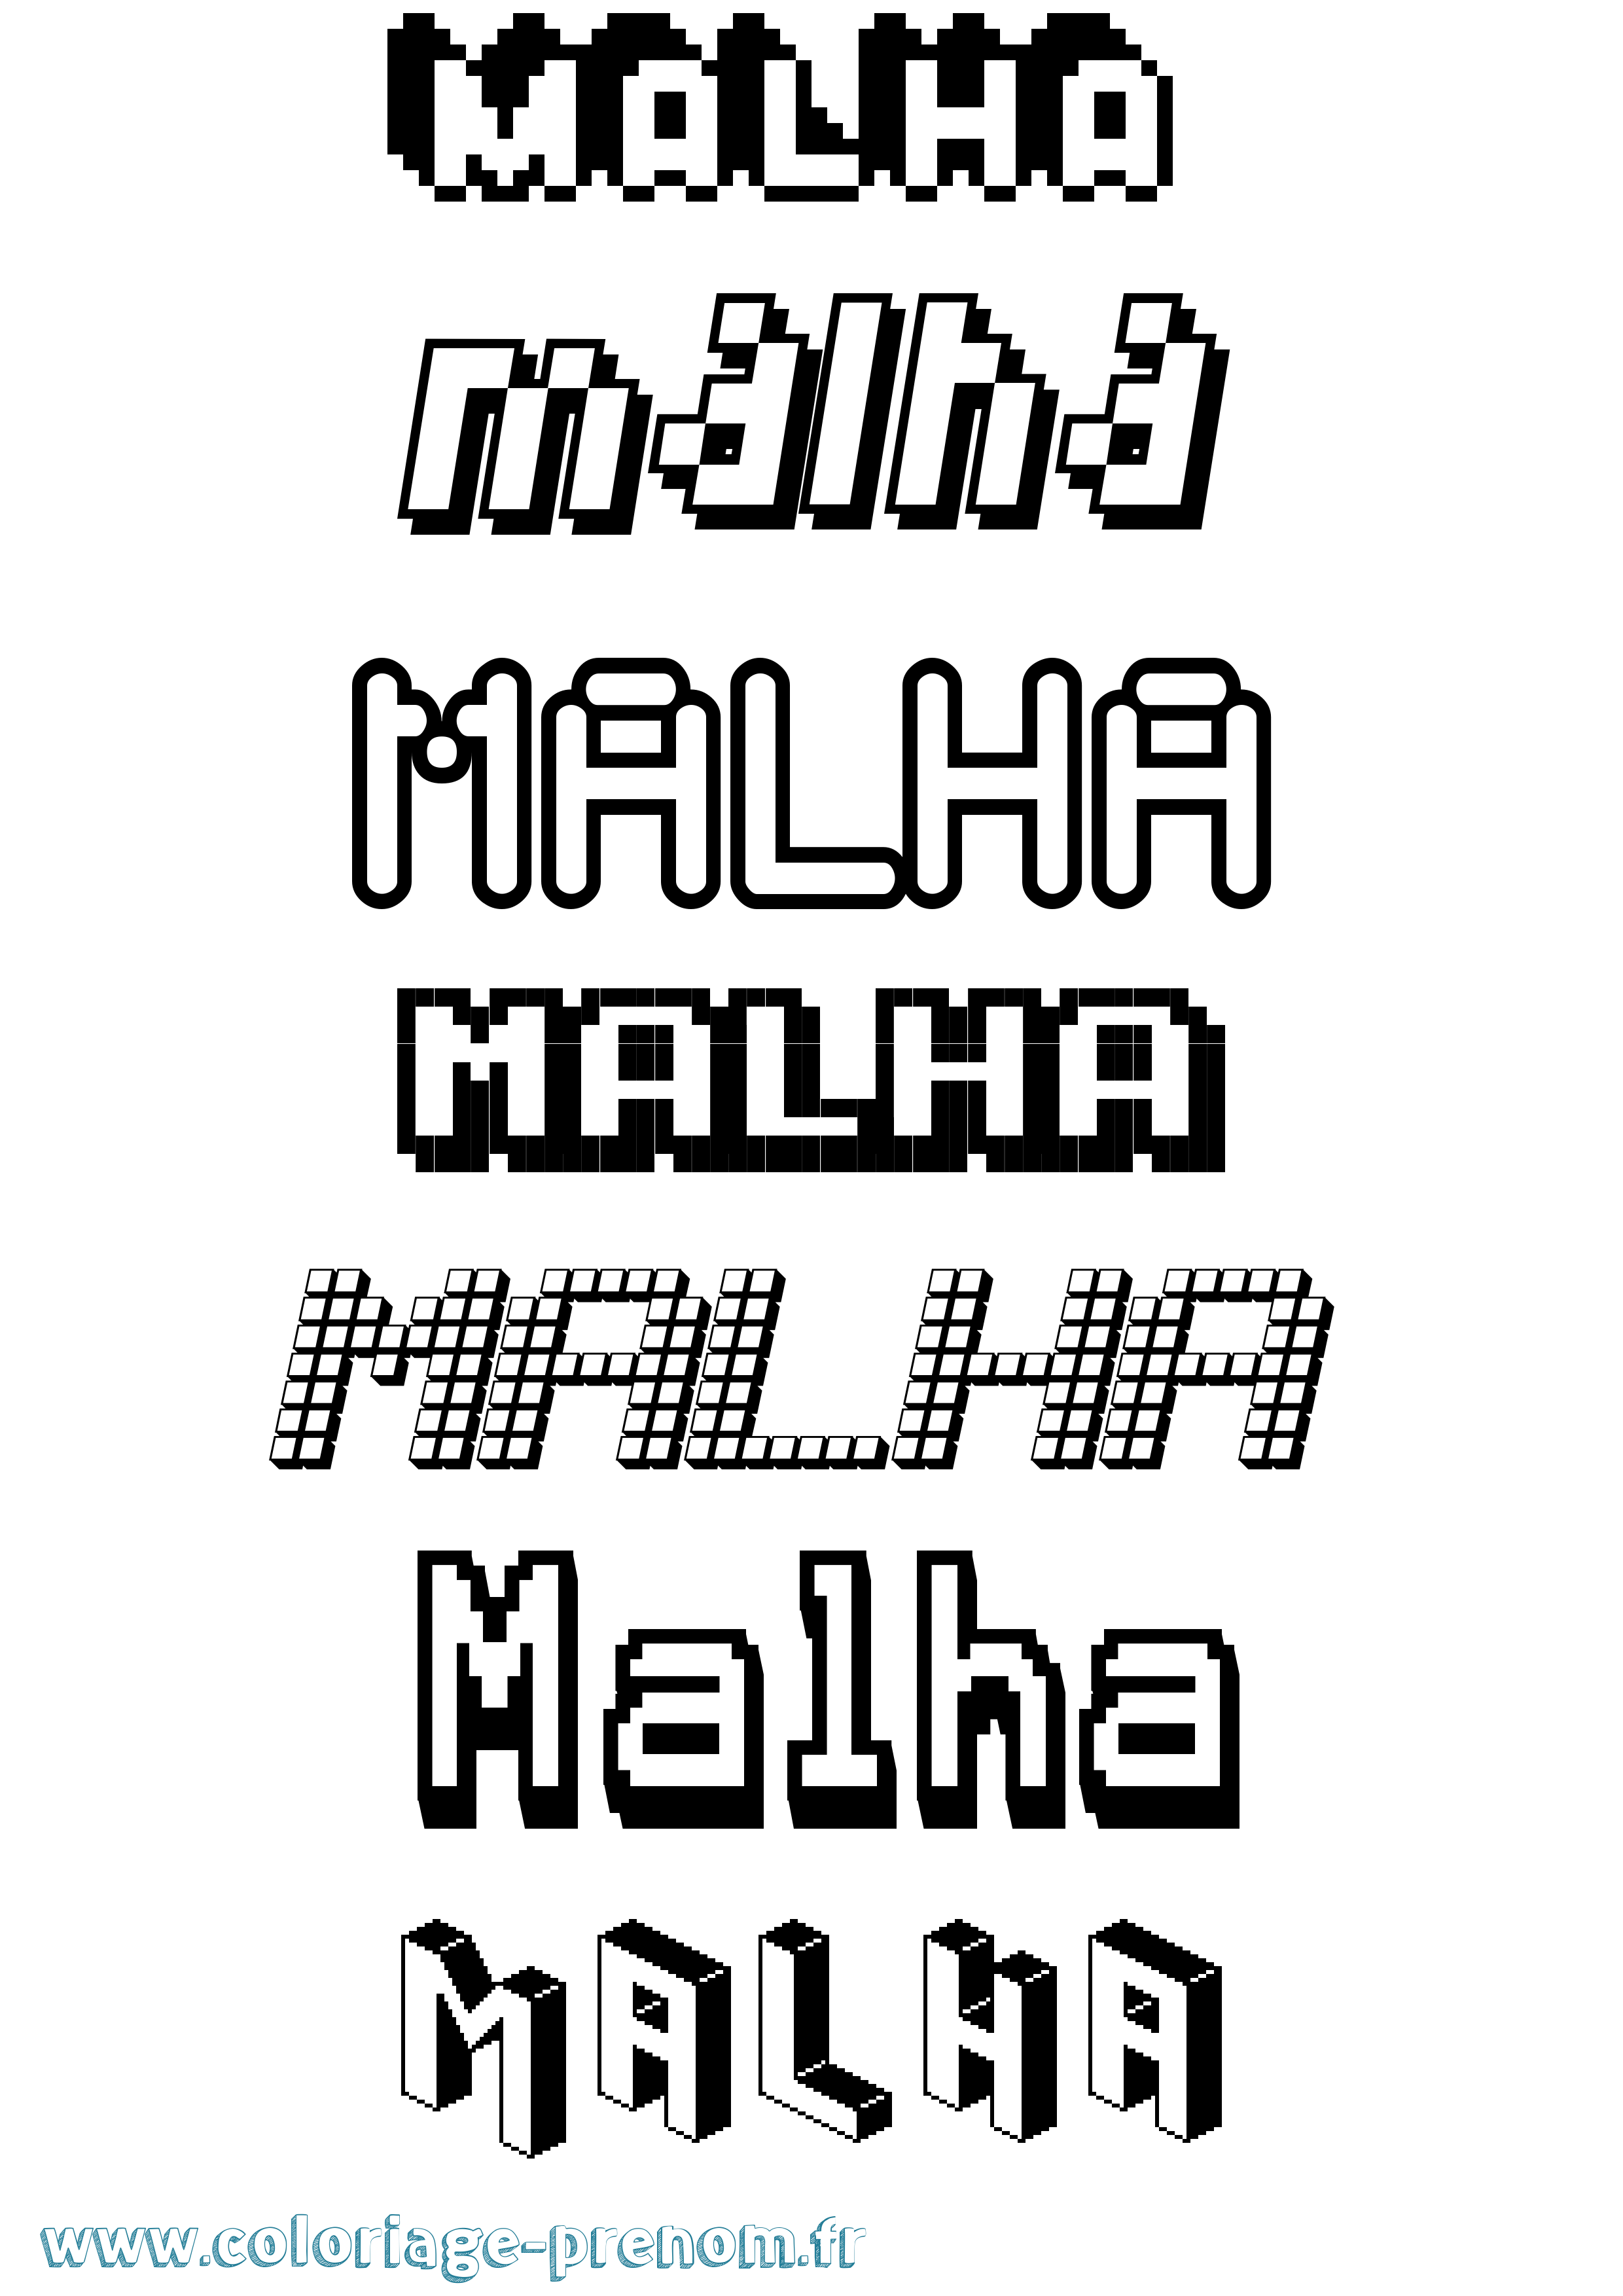 Coloriage prénom Malha Pixel